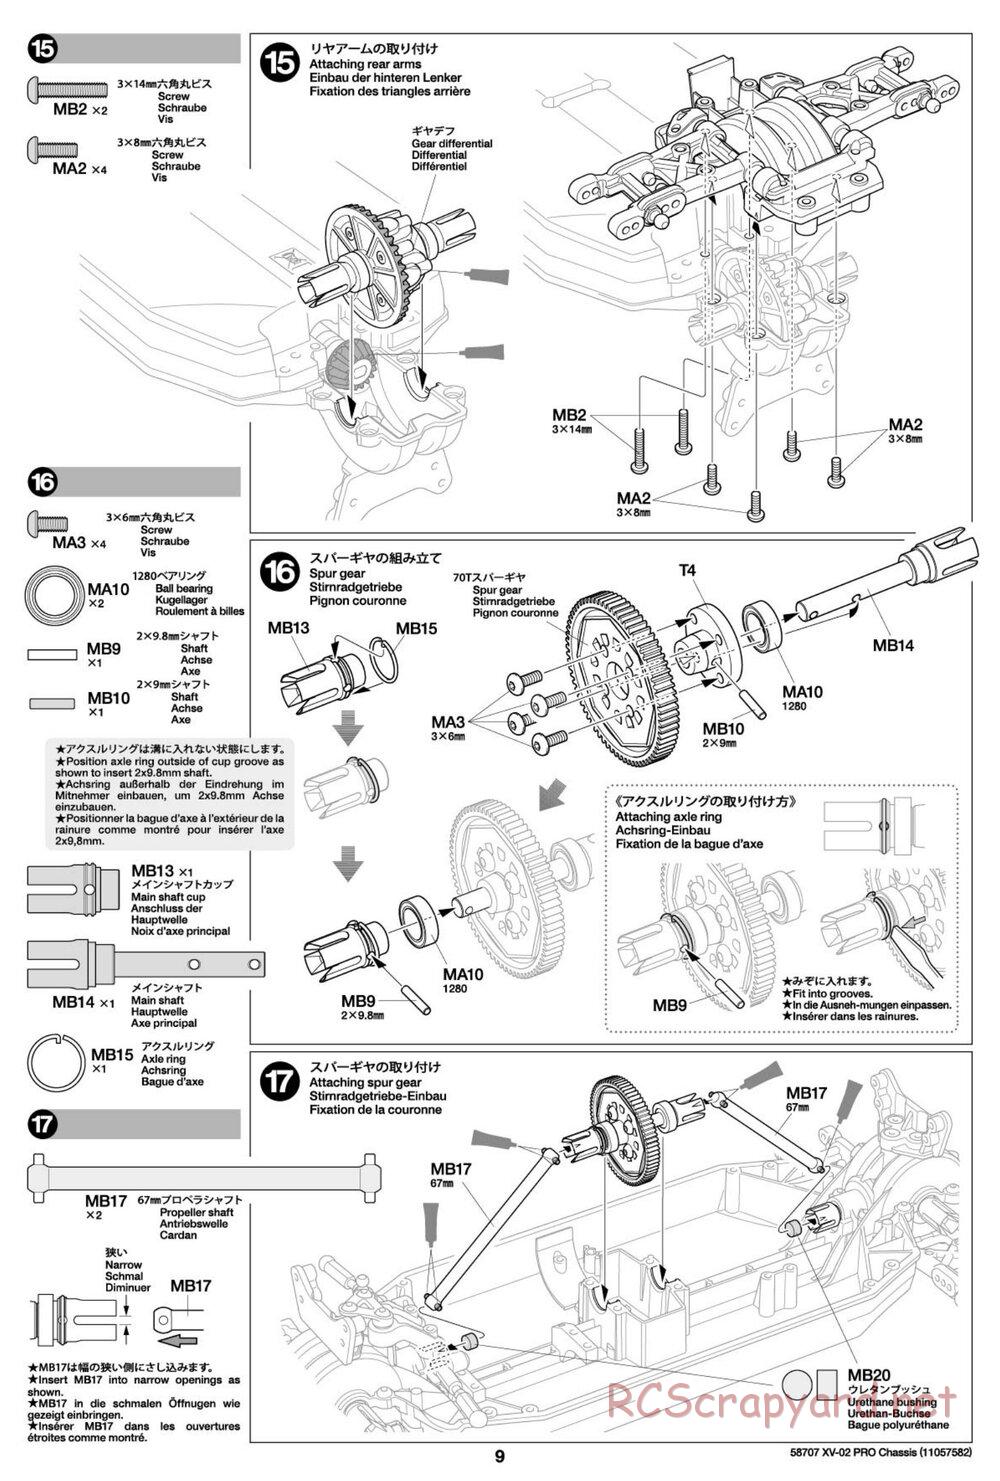 Tamiya - XV-02 Pro Chassis - Manual - Page 9